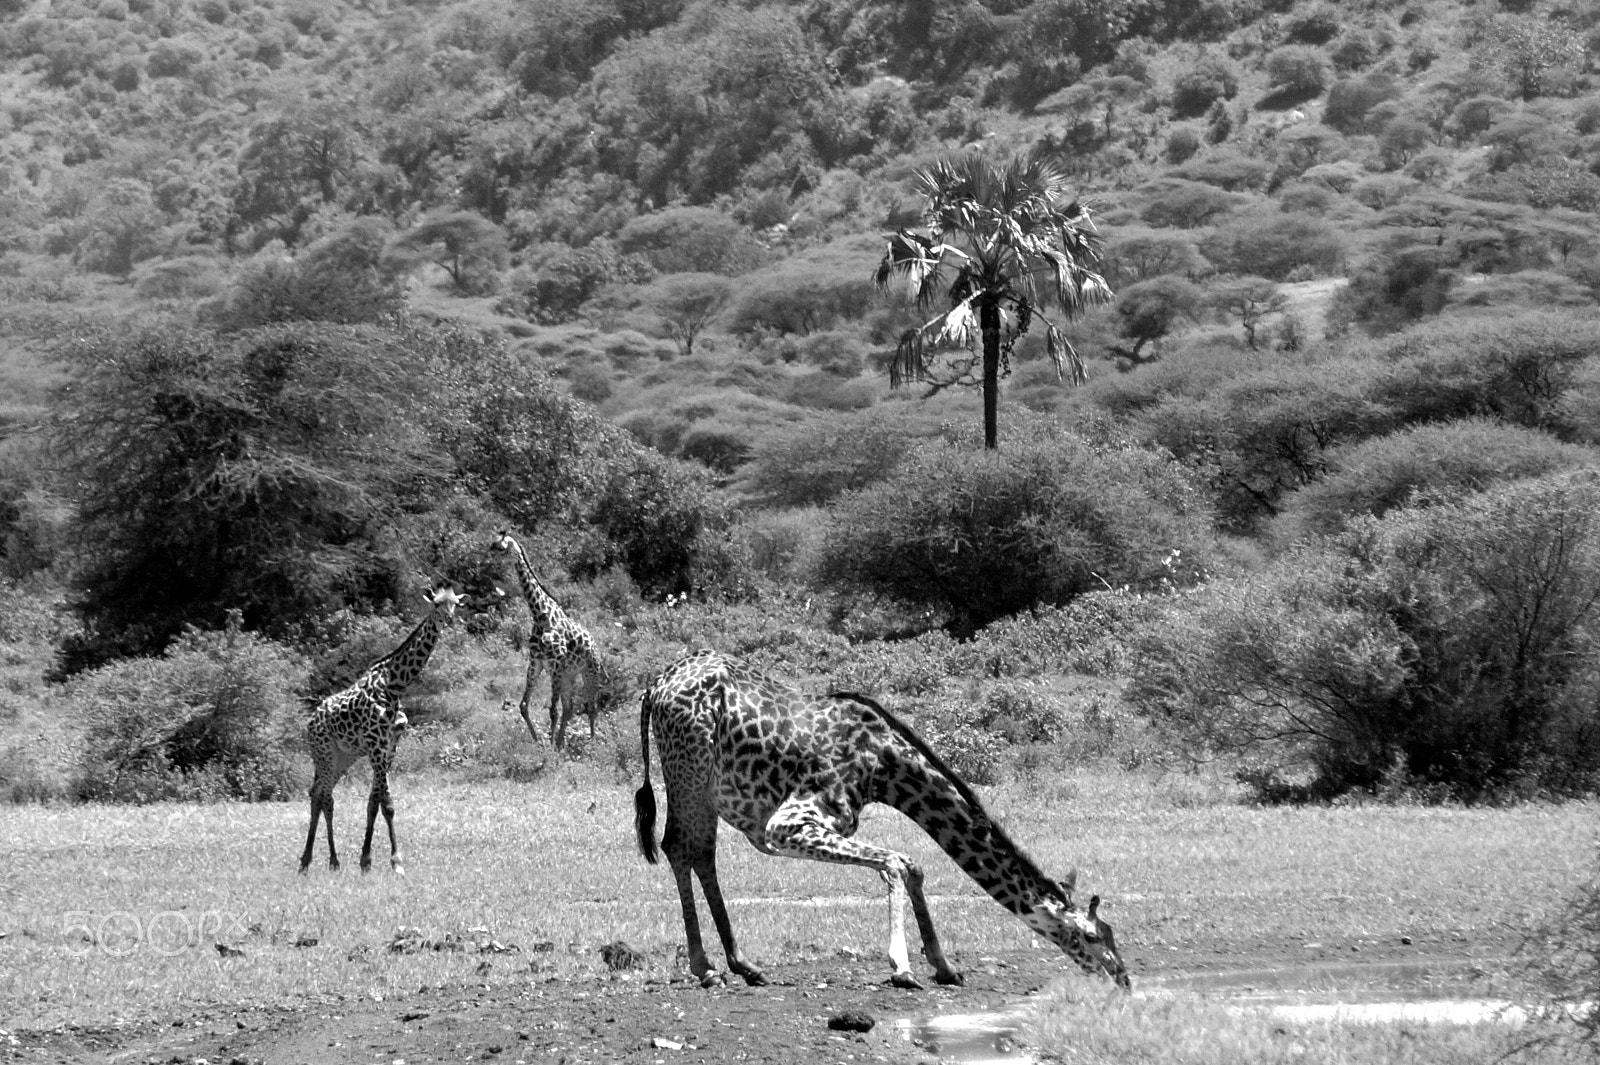 Sony Alpha a3000 + Sony E 55-210mm F4.5-6.3 OSS sample photo. Giraffes at lake manyara, tanzania photography